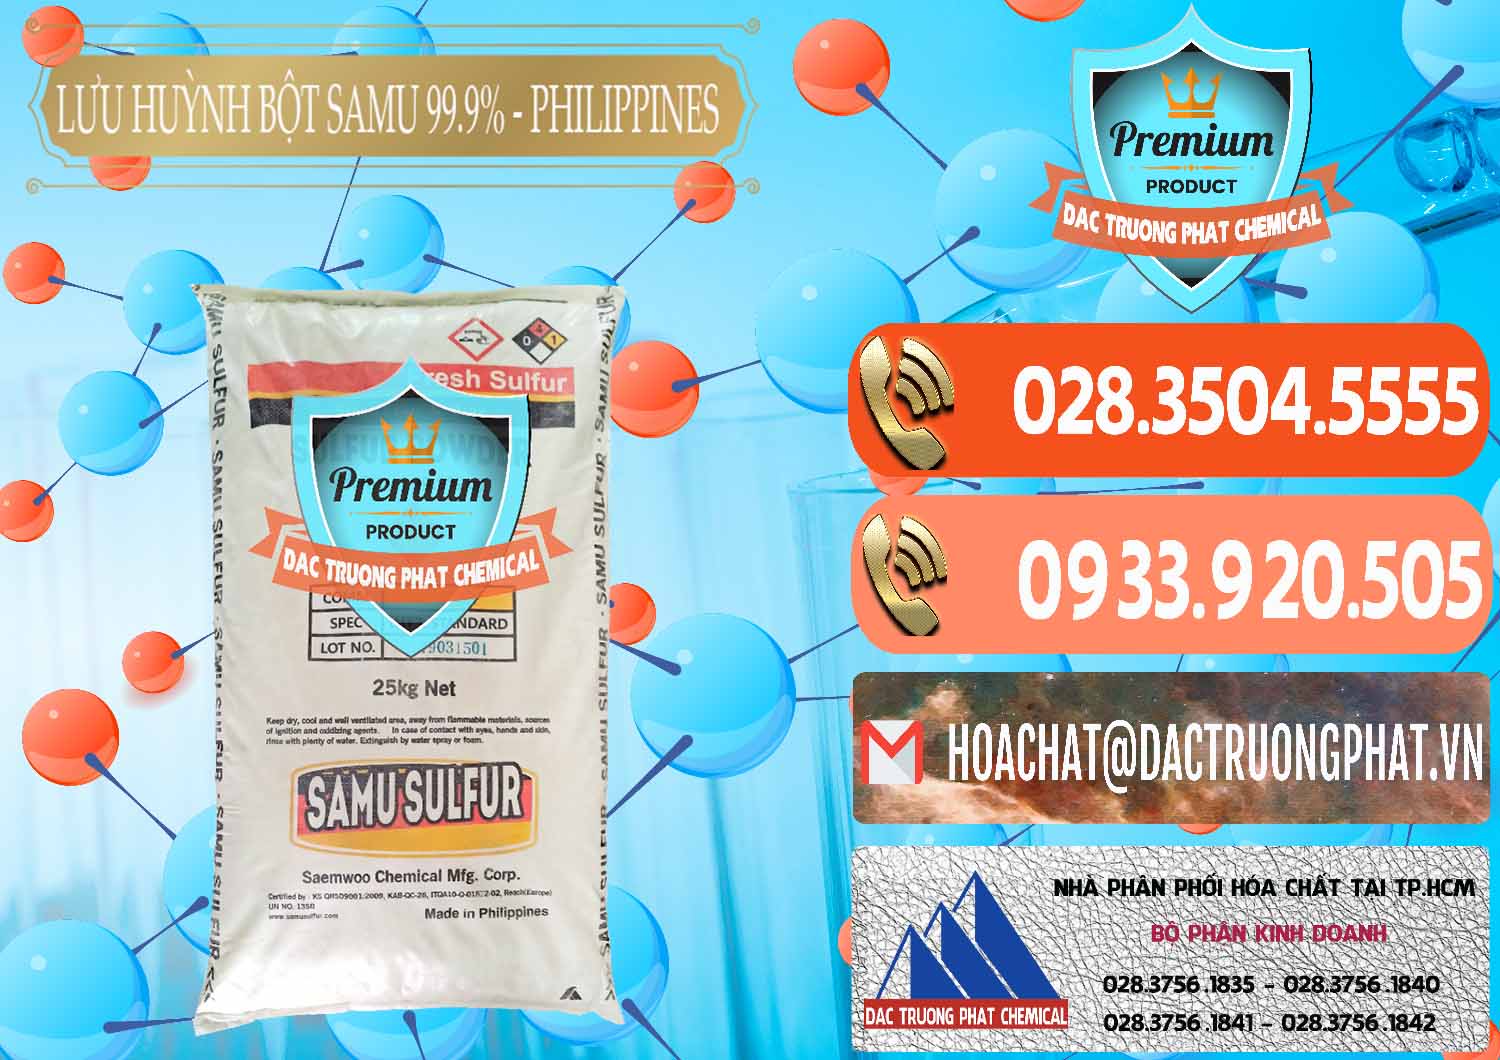 Nơi chuyên bán và cung cấp Lưu huỳnh Bột - Sulfur Powder Samu Philippines - 0201 - Đơn vị kinh doanh _ cung cấp hóa chất tại TP.HCM - hoachatmientay.com